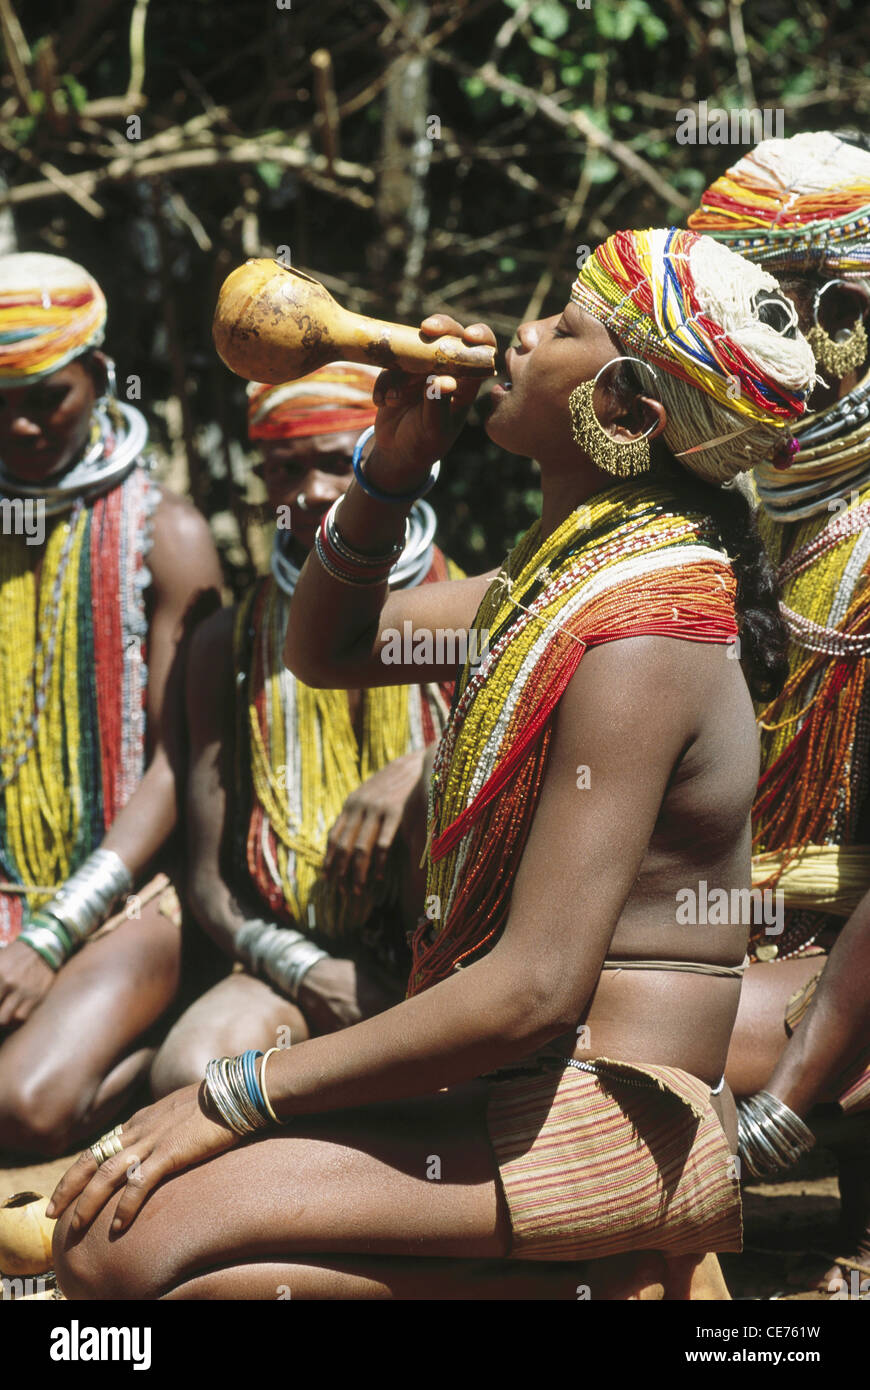 HMA 84797 : indian tribal aux femmes qui boivent de l'alcool traditionnel de l'Orissa en Inde onakadhalli conteneurs Banque D'Images